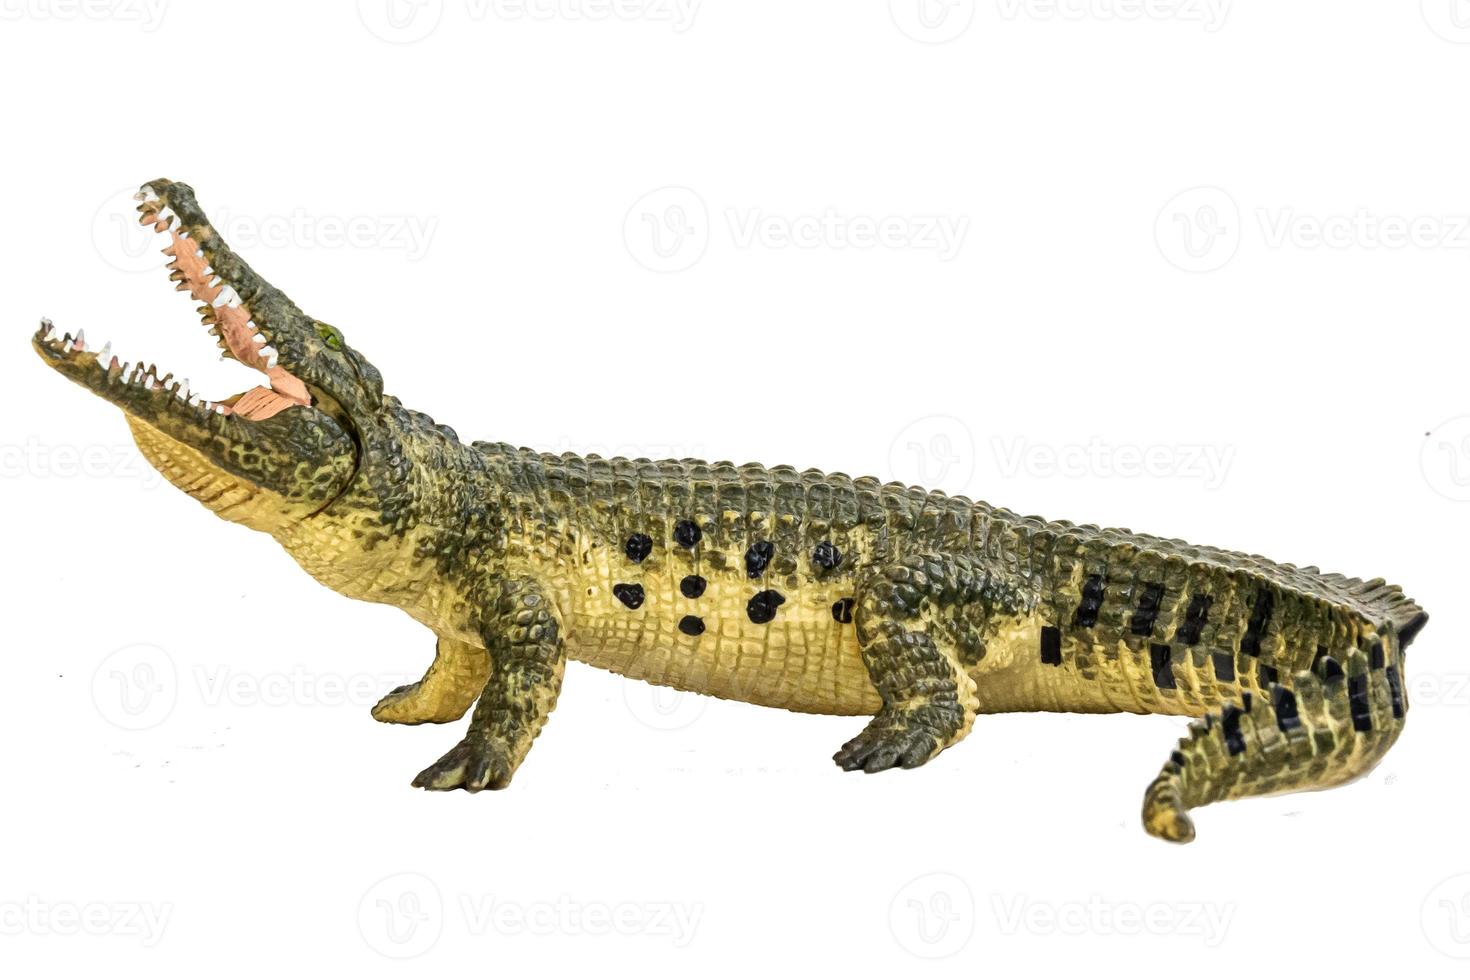 crocodile on isolated background photo